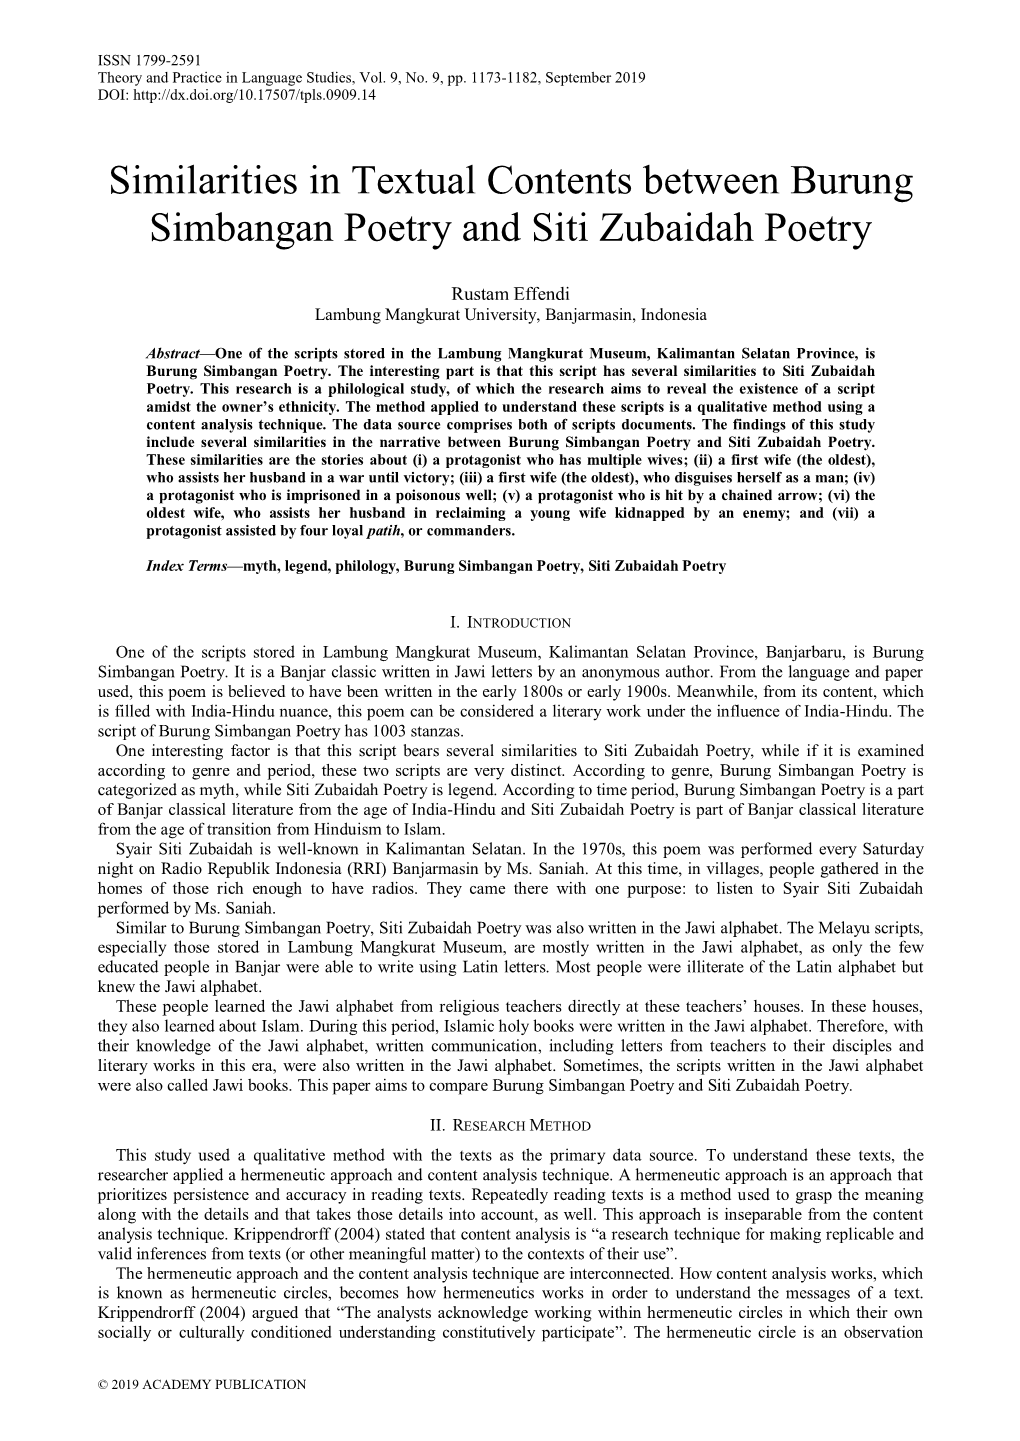 Similarities in Textual Contents Between Burung Simbangan Poetry and Siti Zubaidah Poetry